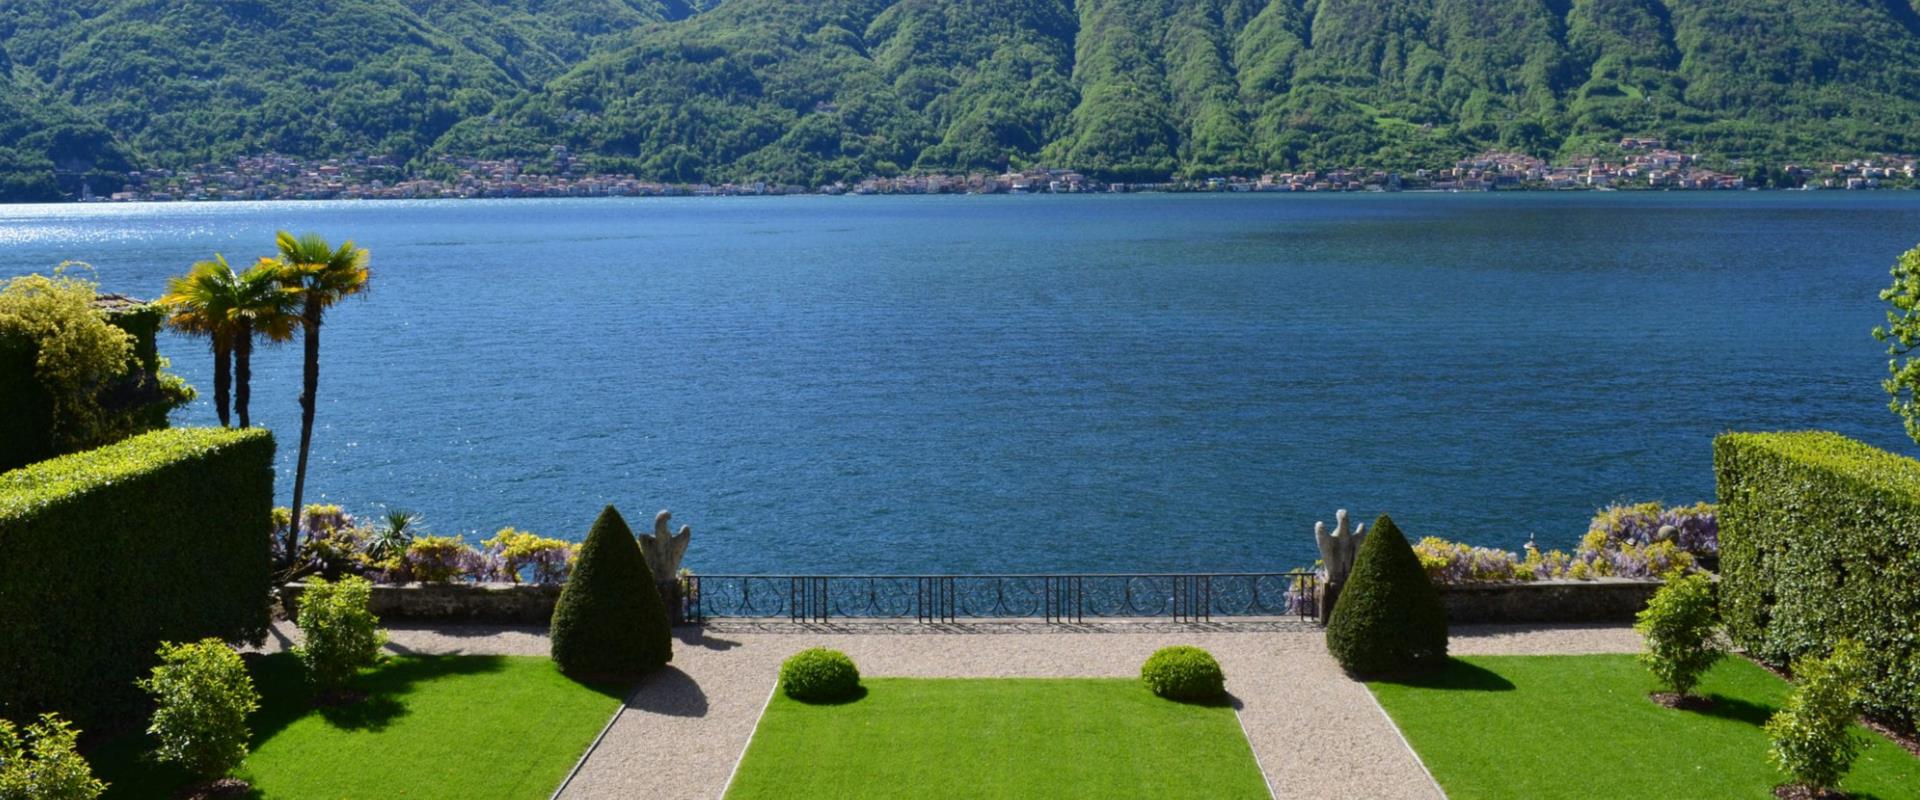 Luxury Villas on Lake Como